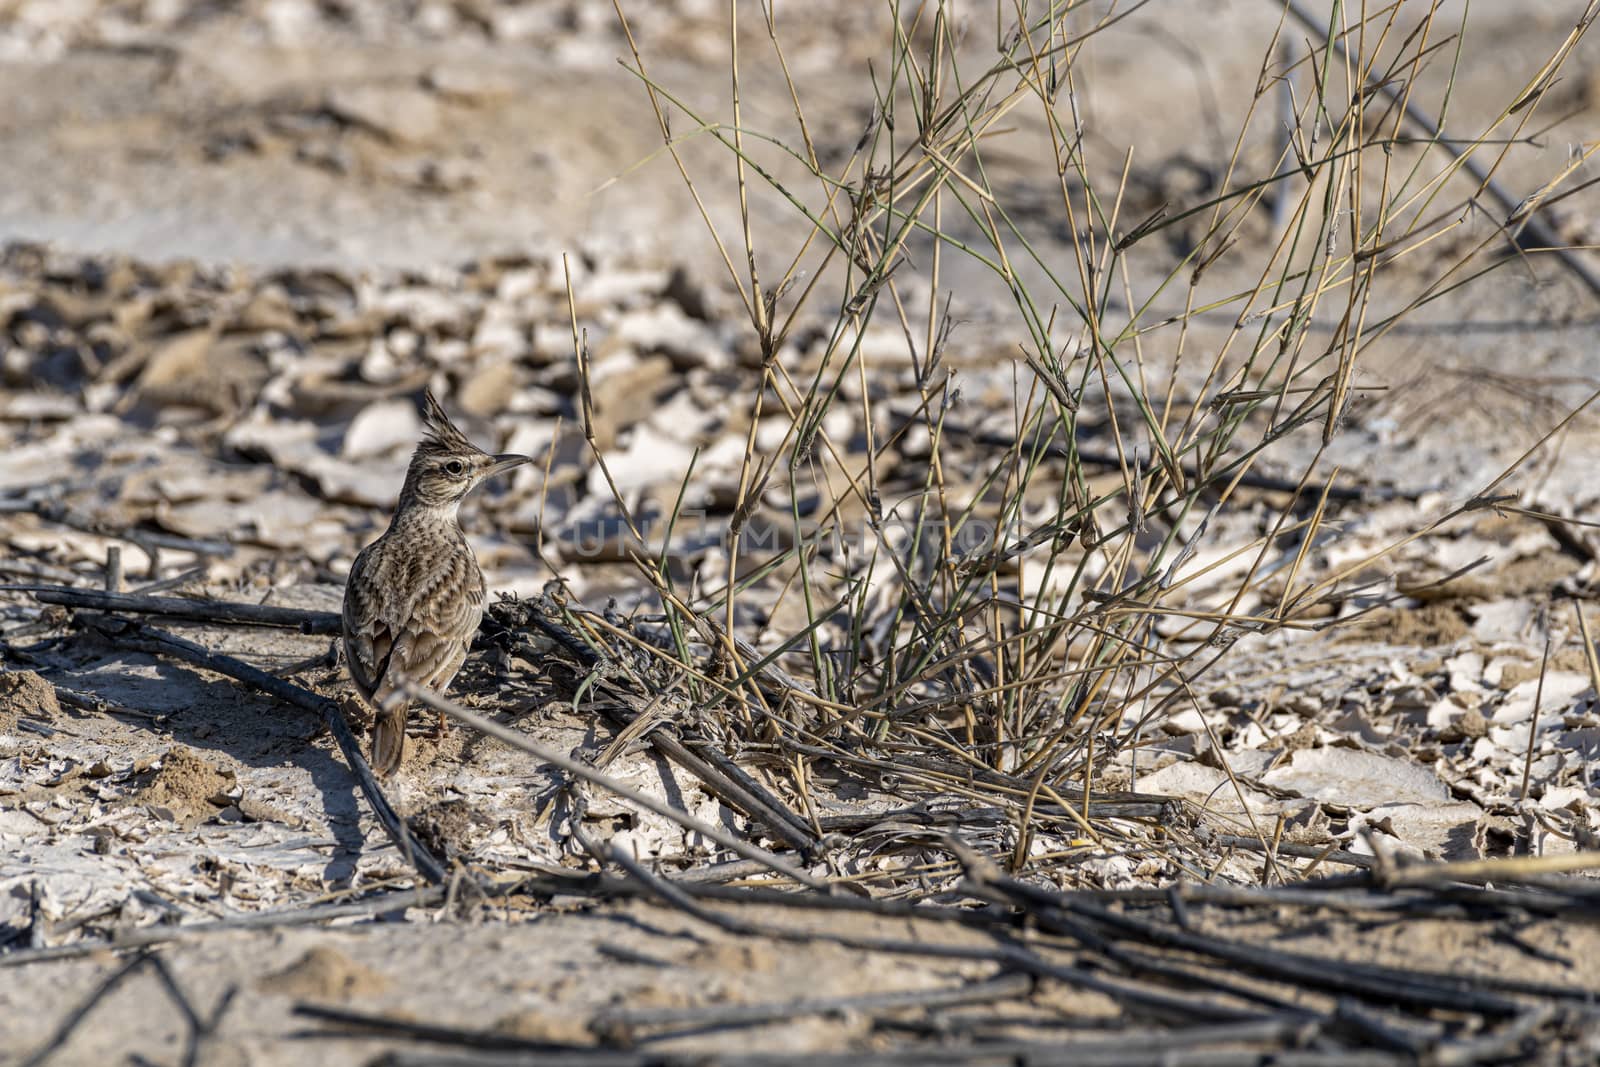 Crested lark (Galerida cristata), Al Qudra, Dubai, UAE by GABIS